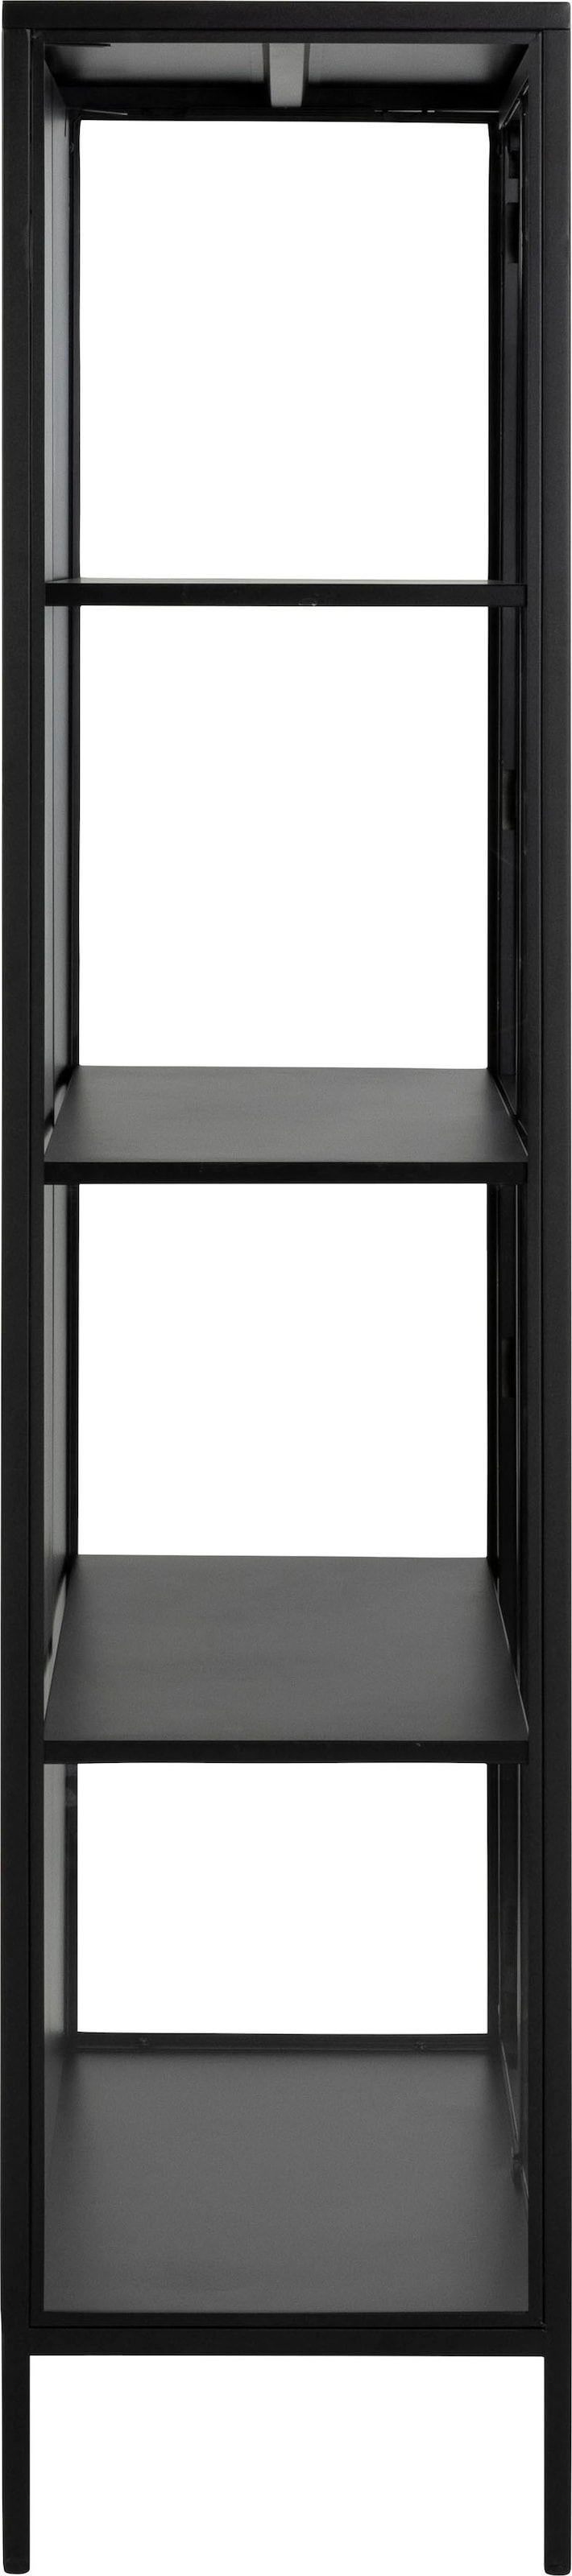 ACTONA GROUP Vitrine »New York«, schwarzes Metall, mit Glastüren und 4 Fächern, Höhe 180cm